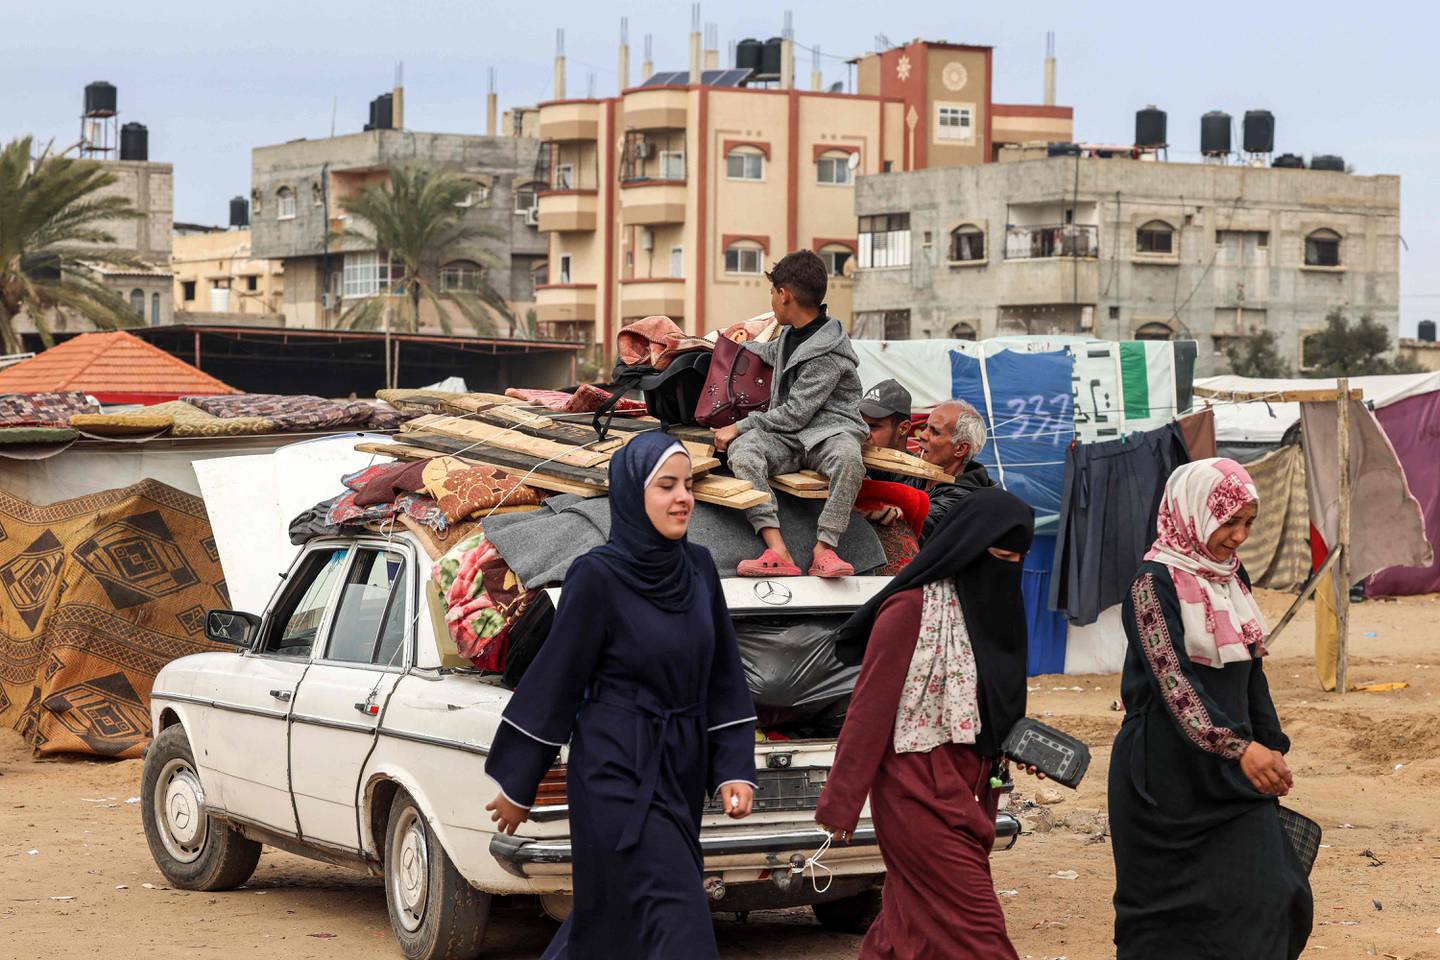 Las mujeres pasan junto a un vehículo cargado con artículos asegurados con cuerdas mientras la gente huye de Rafah hacia el norte, hacia el centro del territorio palestino, en medio del conflicto en curso entre Israel y el grupo militante palestino Hamas. (Foto de MOHAMMED ABED / AFP)